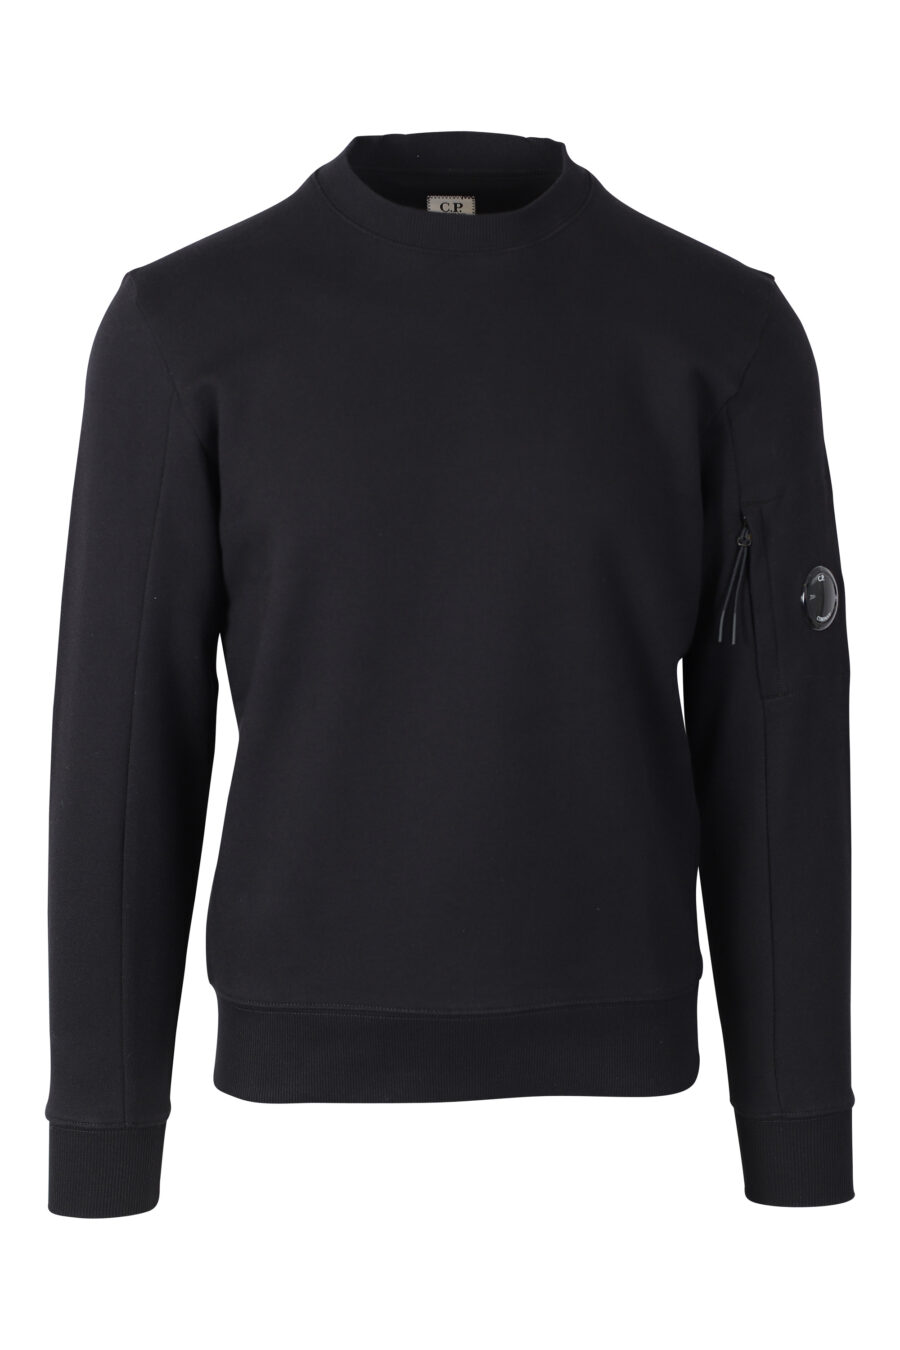 Sweatshirt noir avec mini-logo circulaire sur le côté - IMG 2374